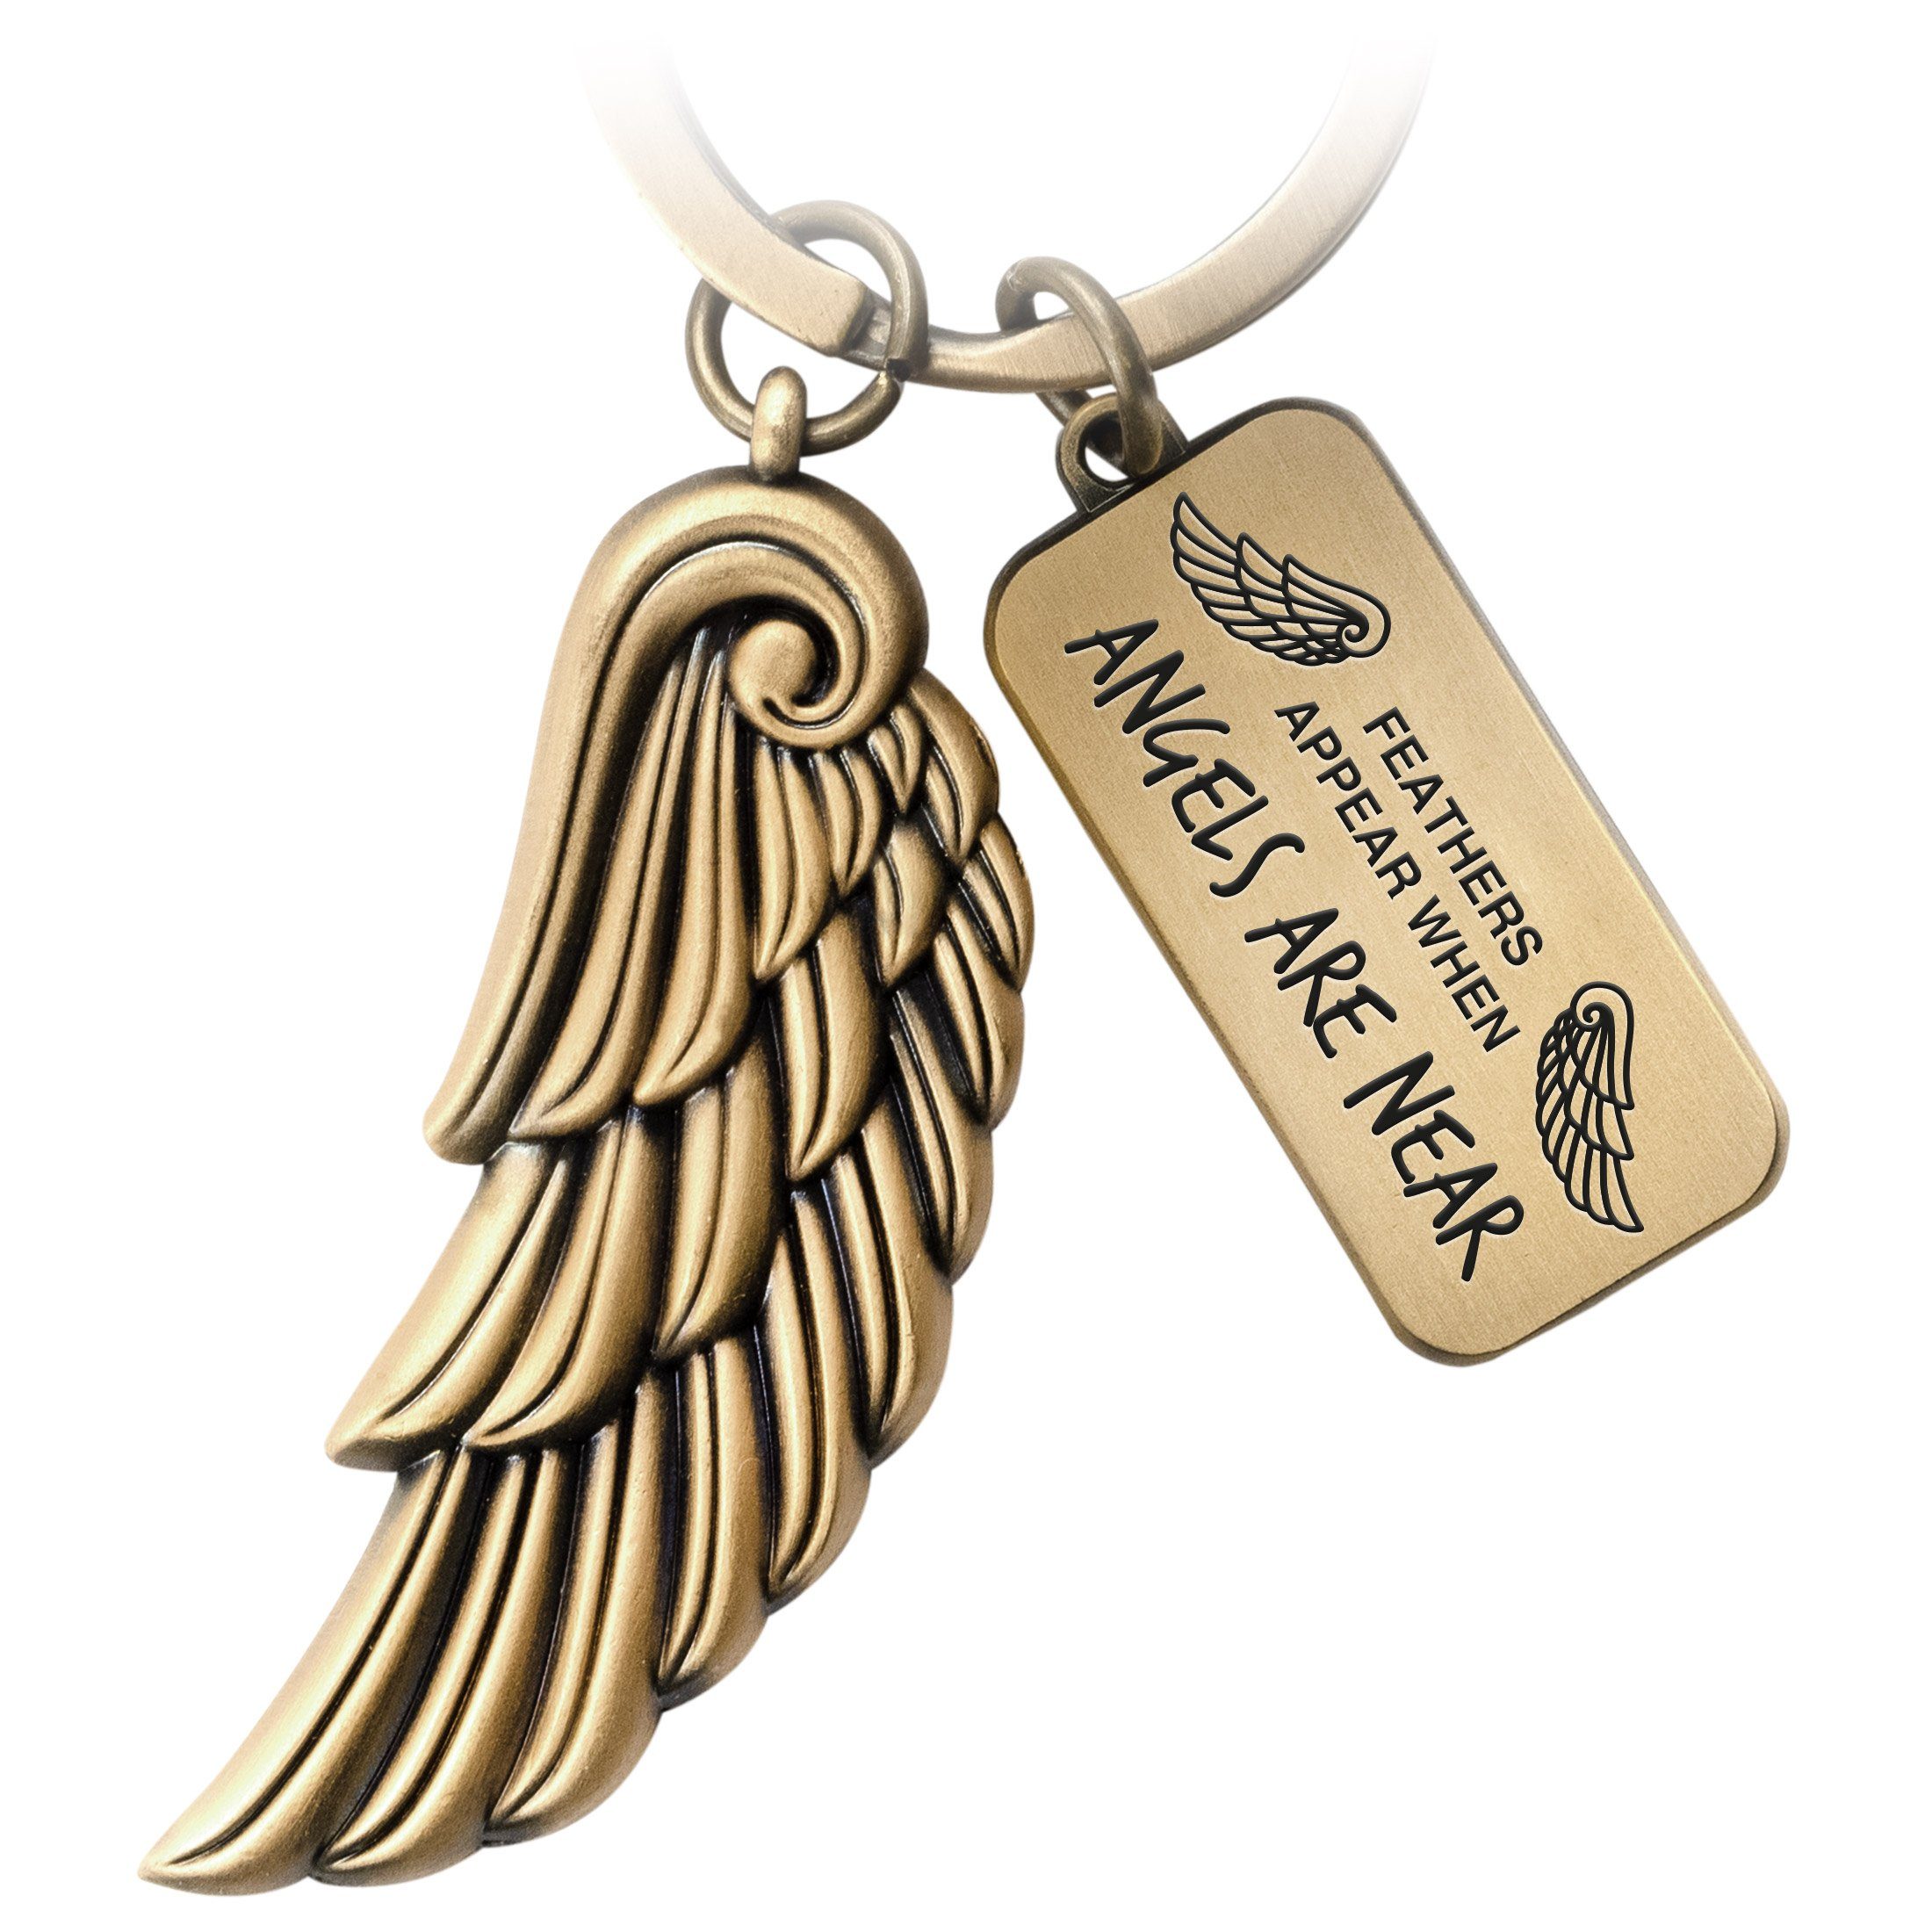 Schlüsselanhänger Schutzengel Angel Engelsflügel Geschenk Gravur Bronze Are - Near FABACH - Angels mit Antique